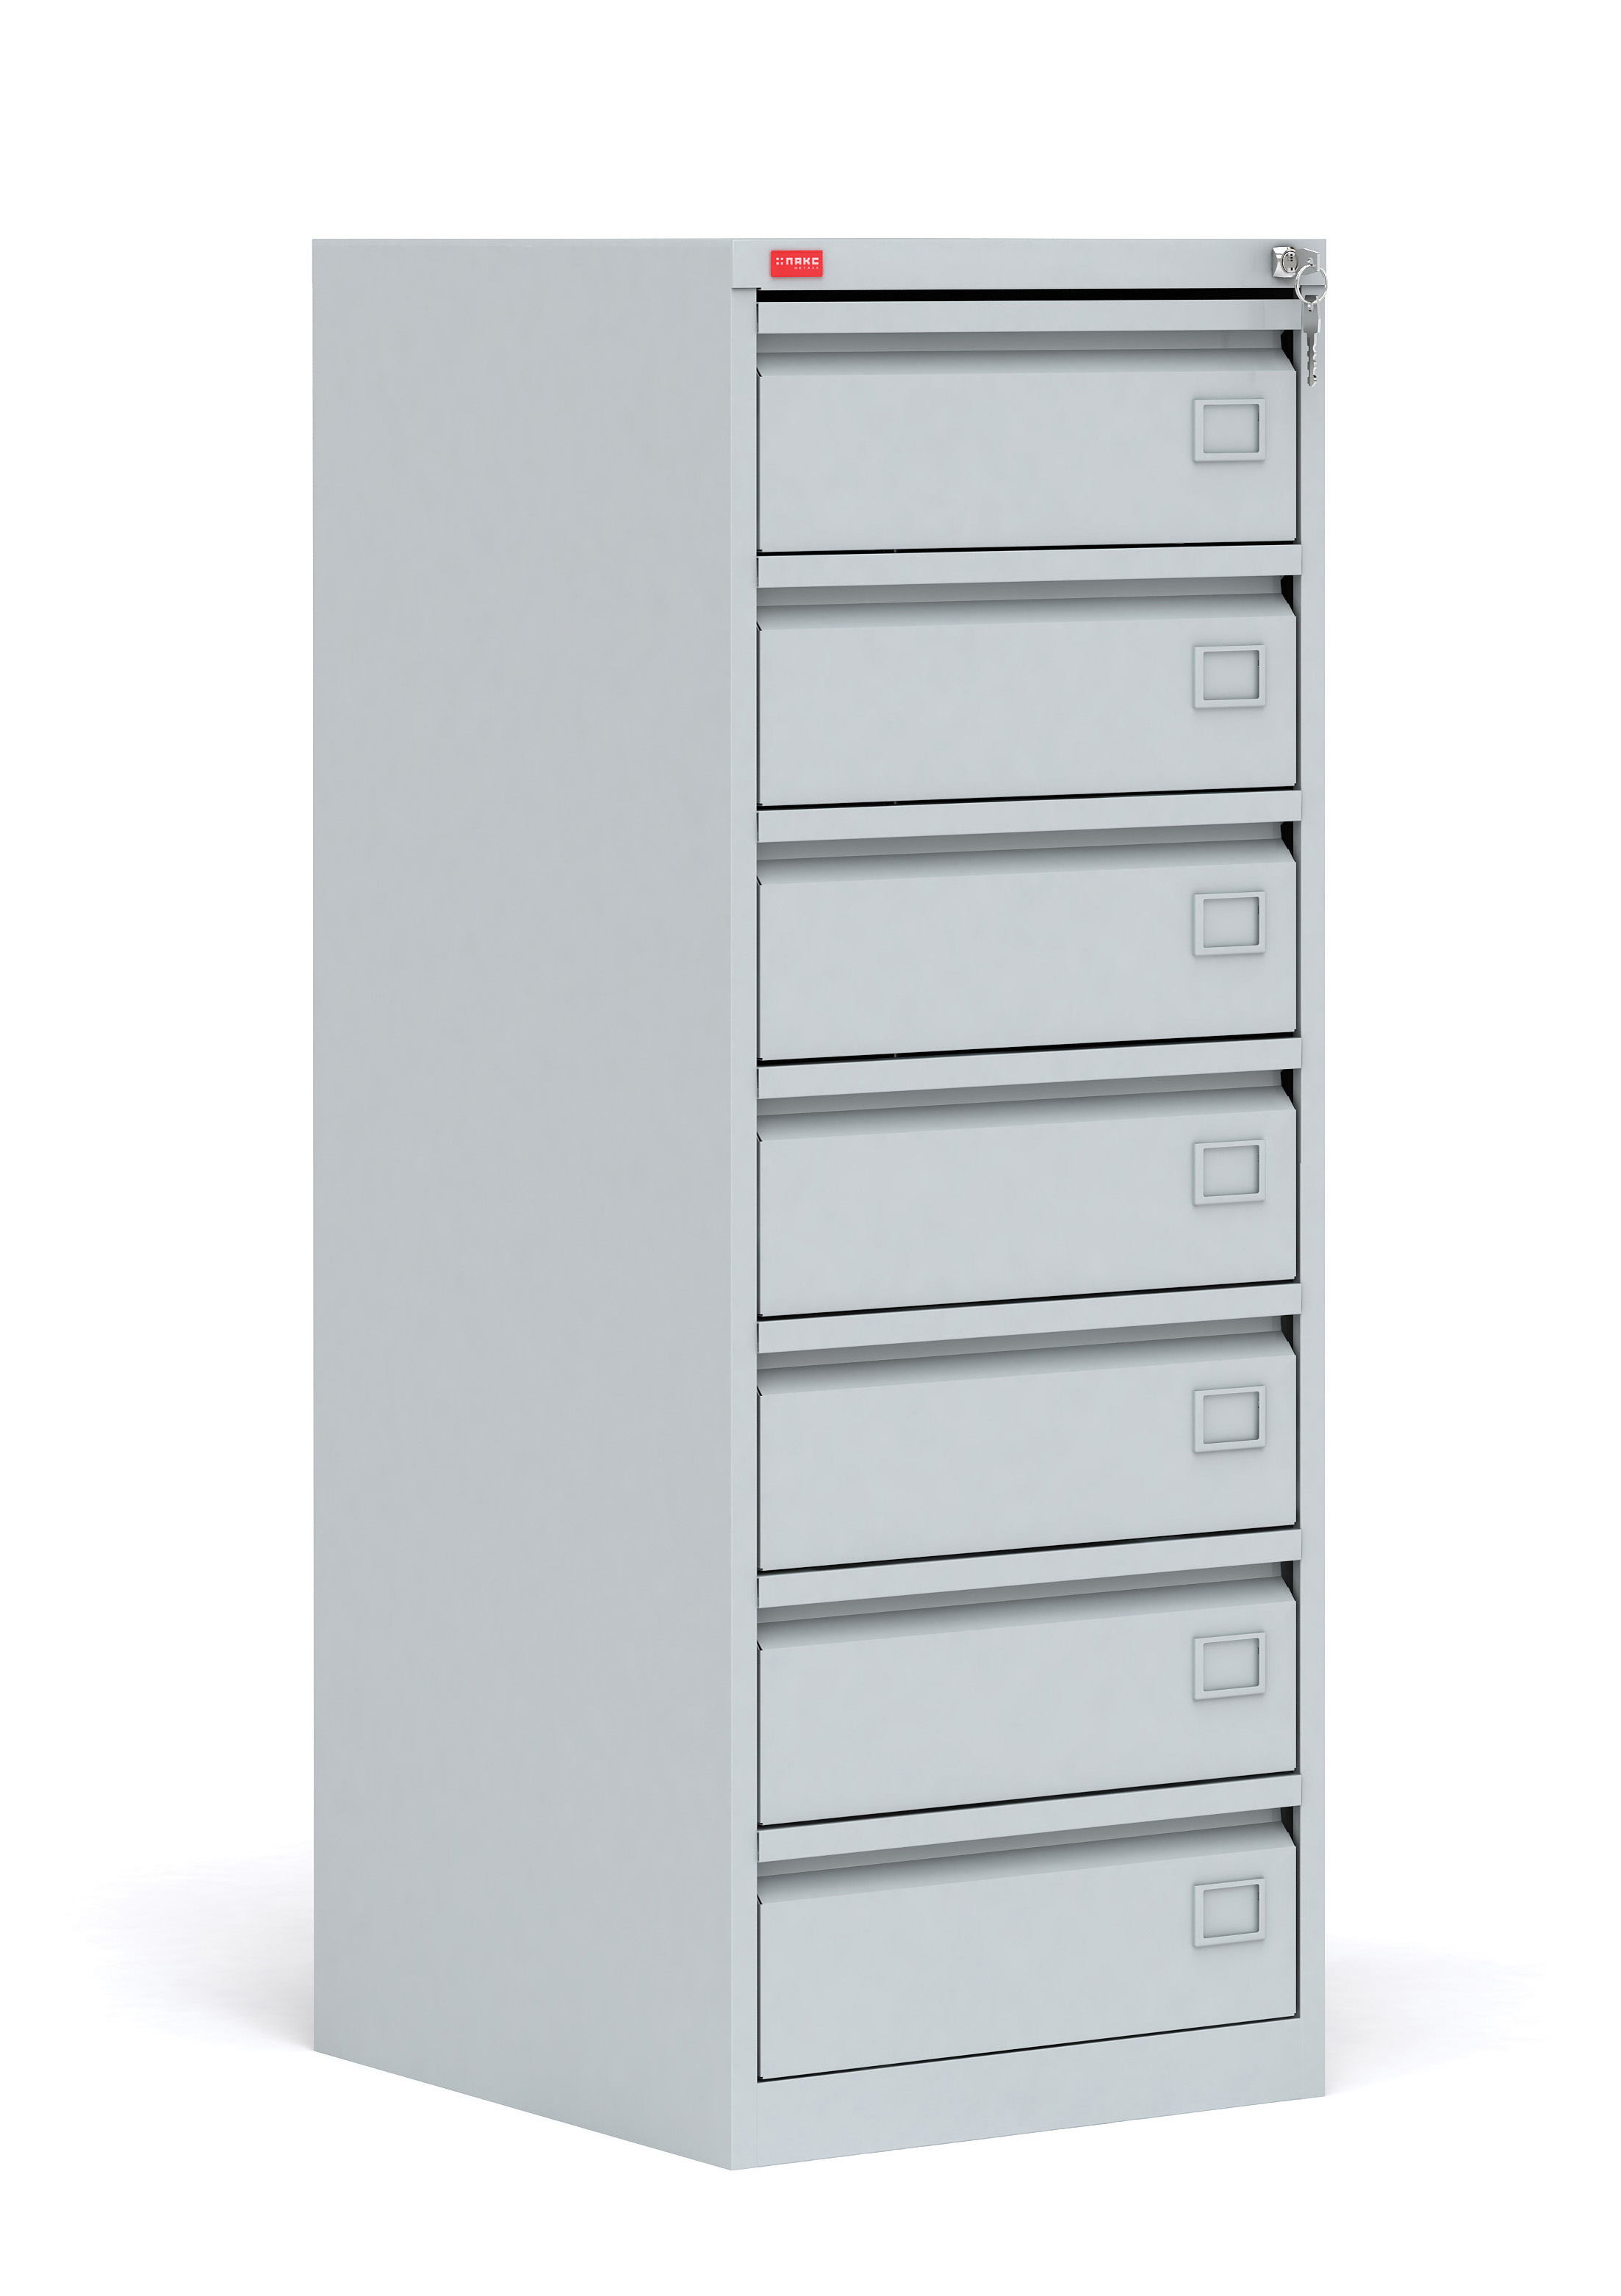 Картотечный металлический шкаф для хранения документов КР-7